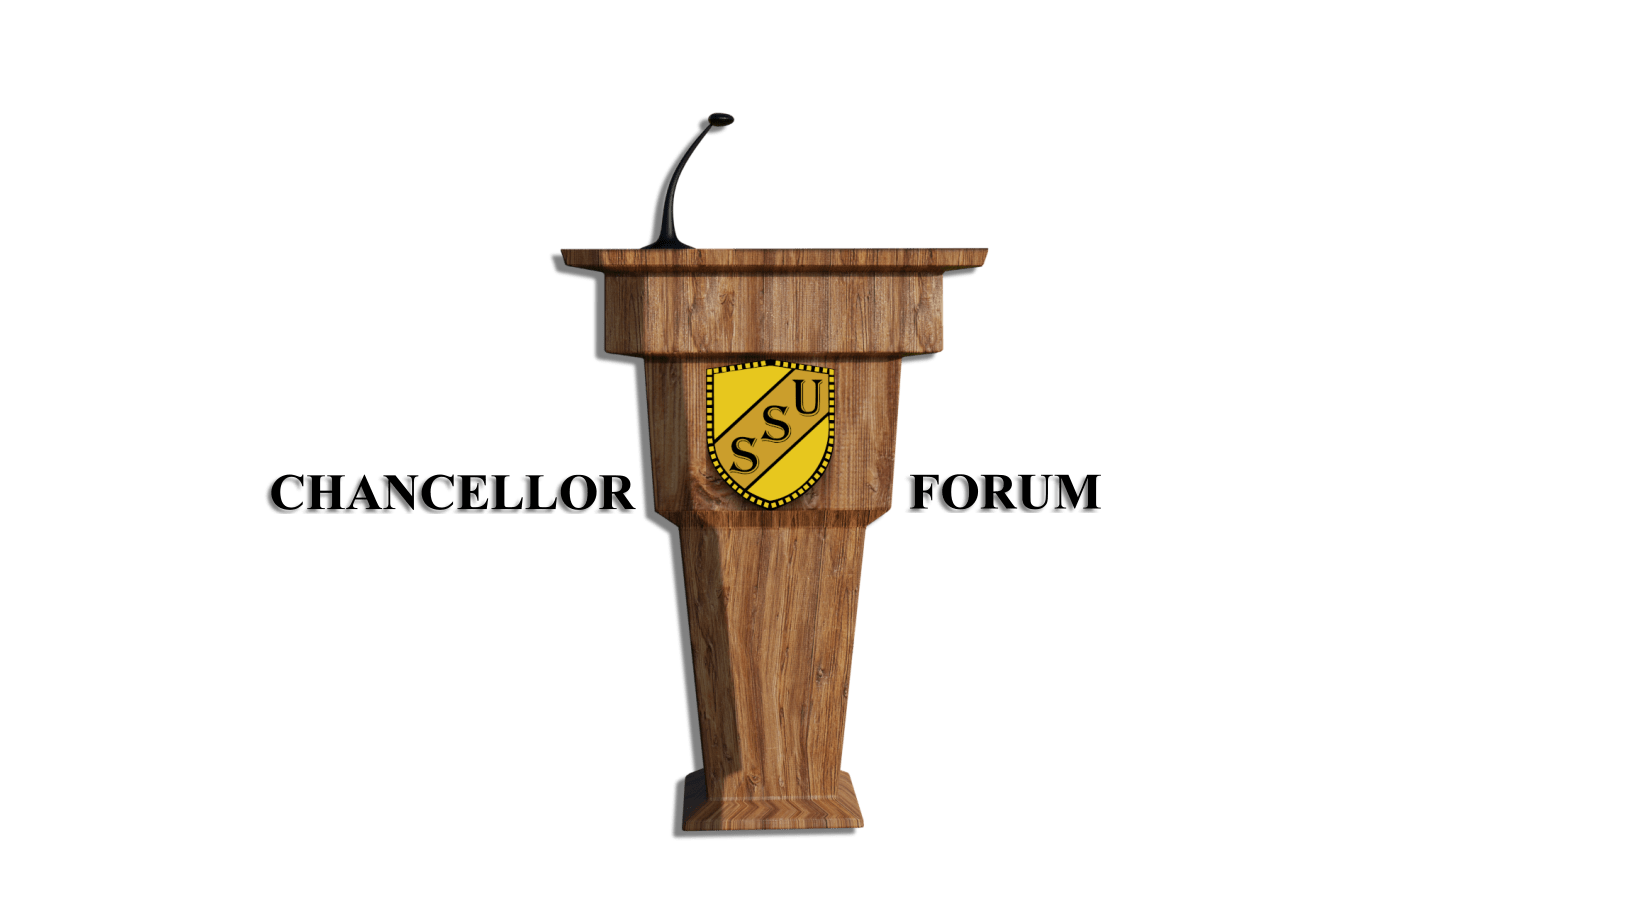 Chancellor Forum